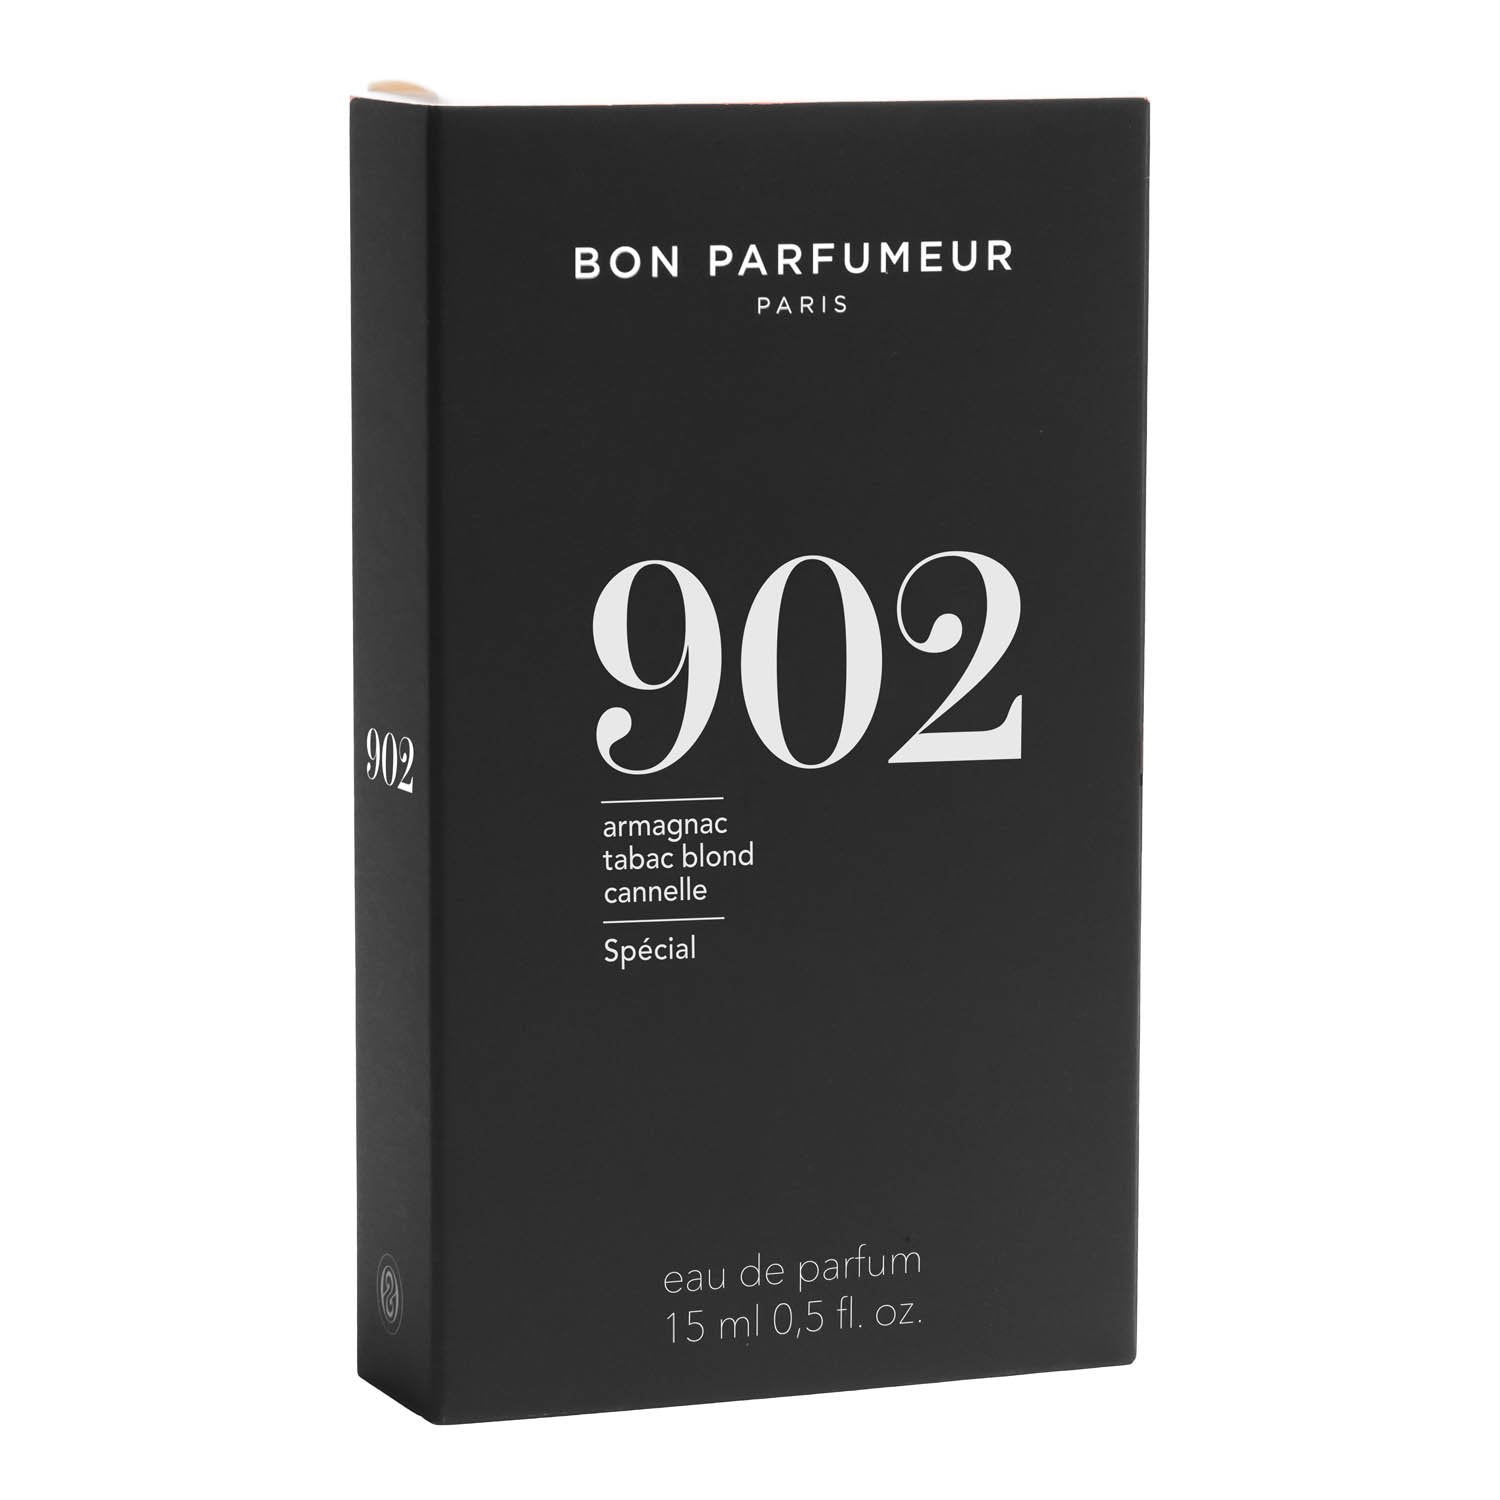 Bon Parfumeur Eau de Parfum 902 15 ml